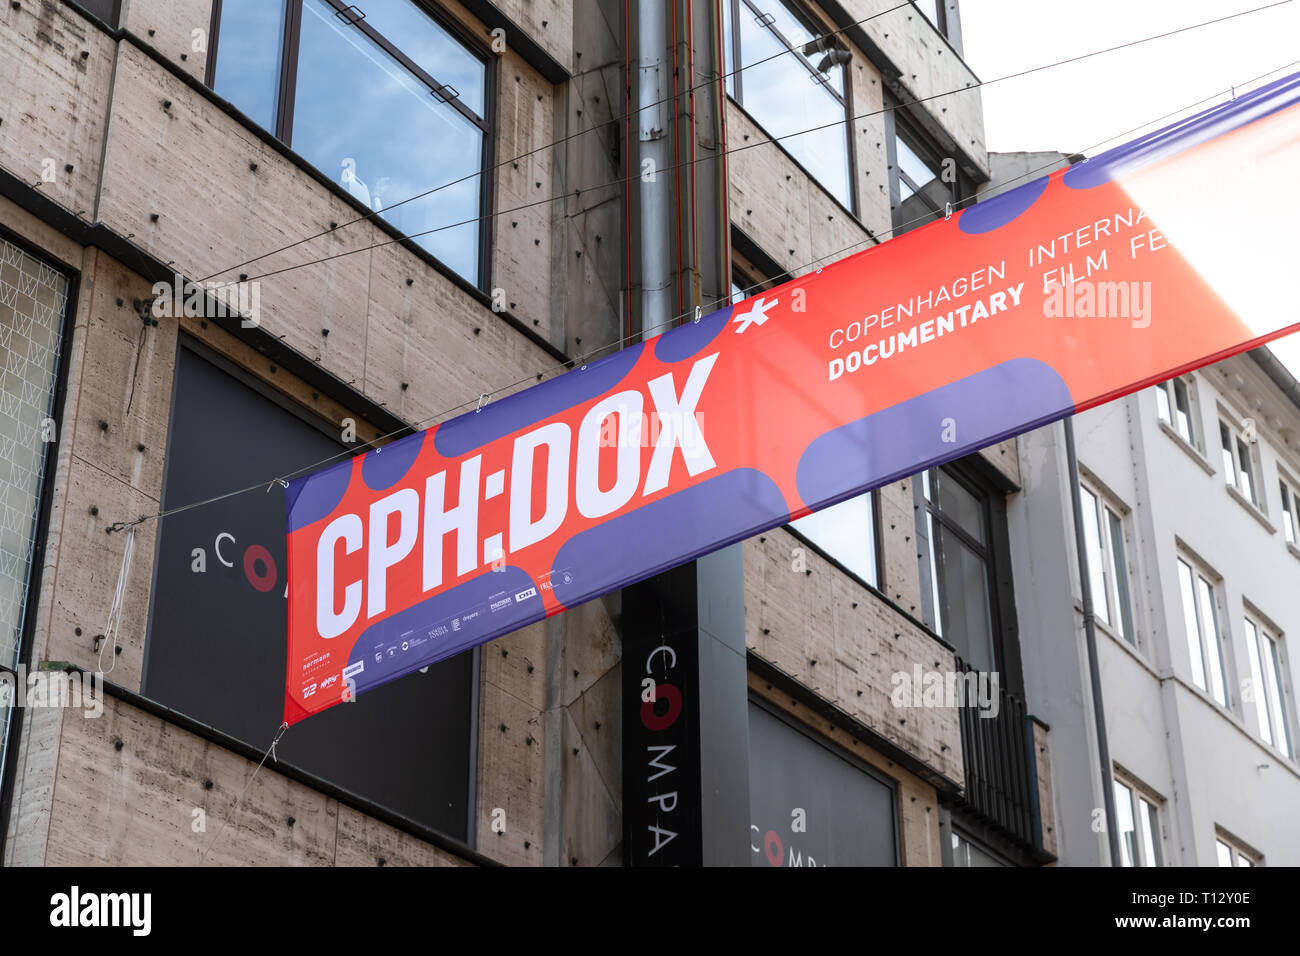 CPH:DOX, Copenhagen International Documentary Film Festival, banner between houses, Copenhagen, Denmark Stock Photo